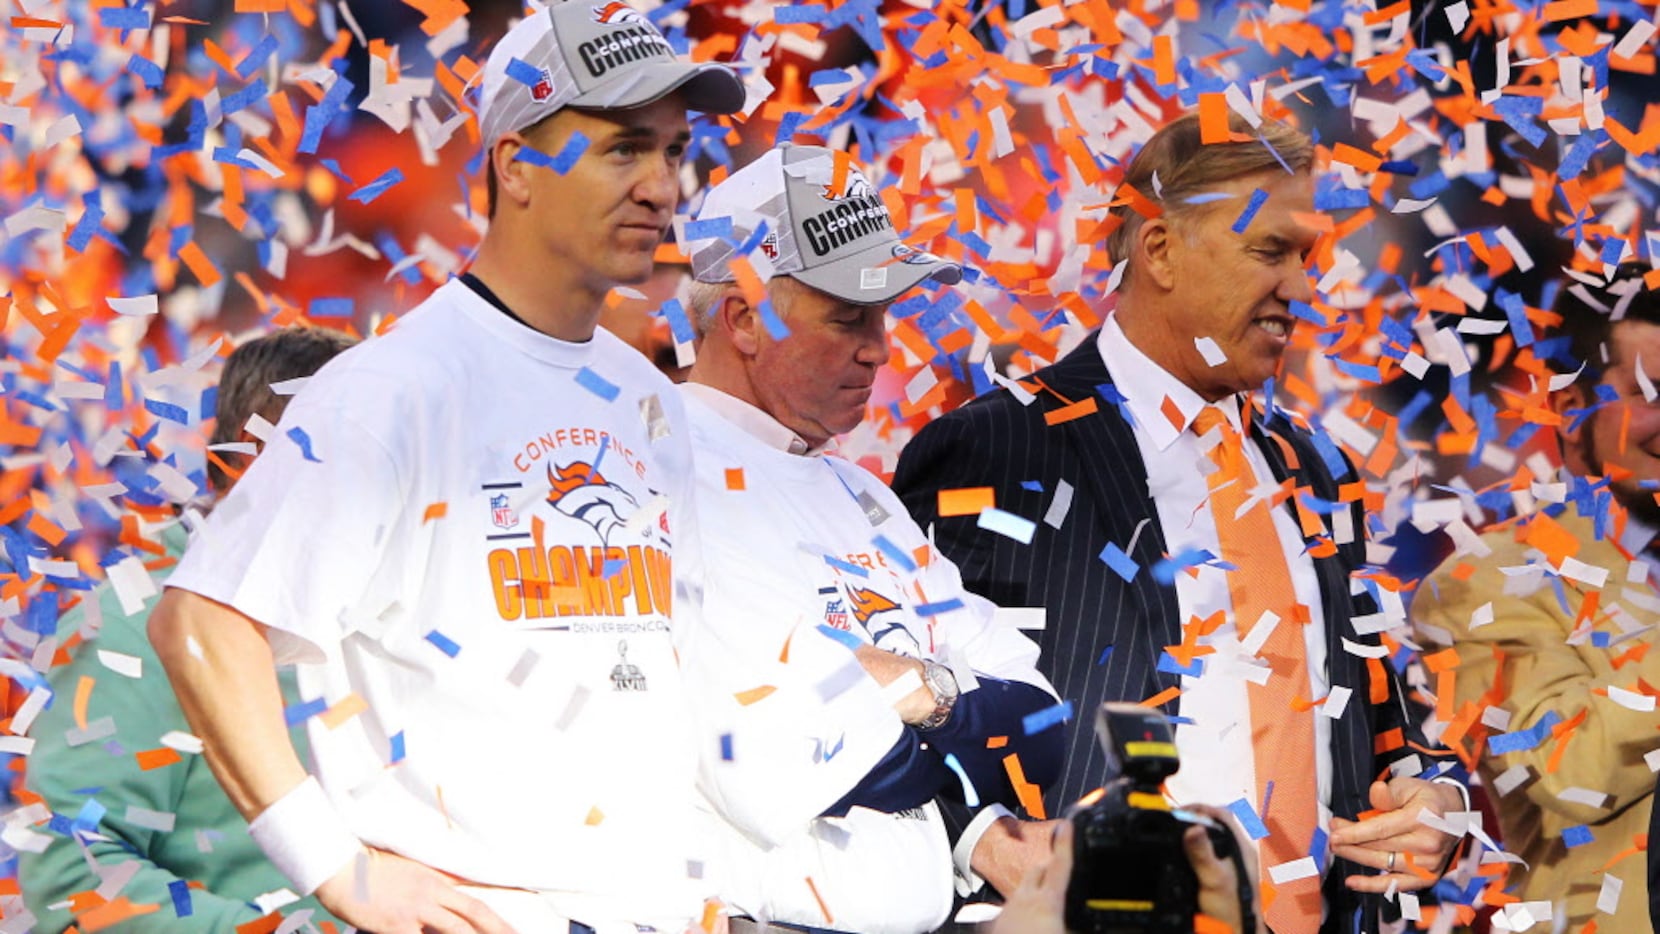 Broncos 2014 playoffs game time, TV schedule, ticket information